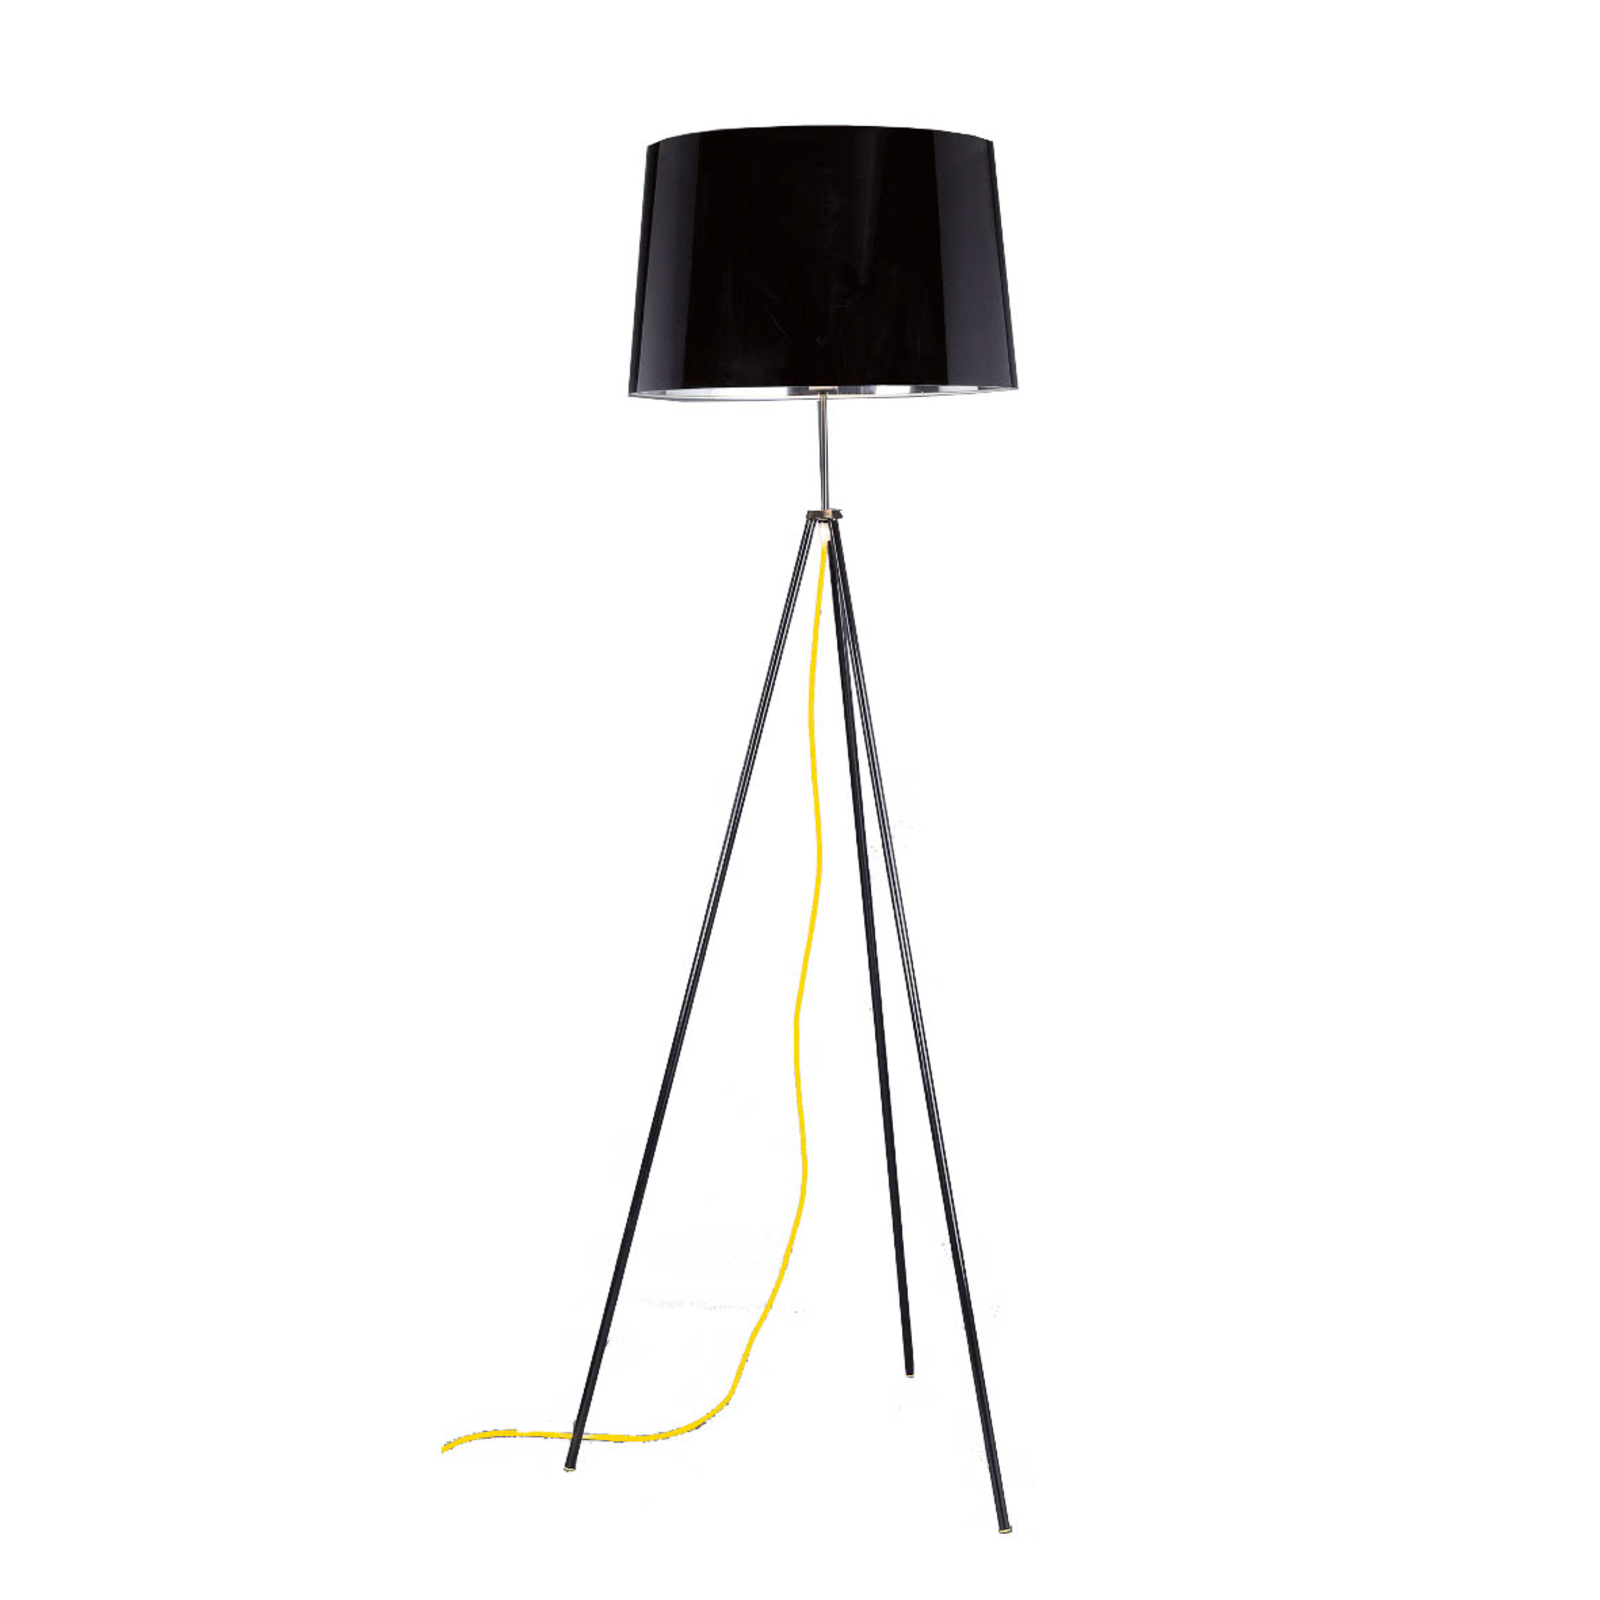 Aluminor Tropic lampa stojąca czarna, kabel żółty